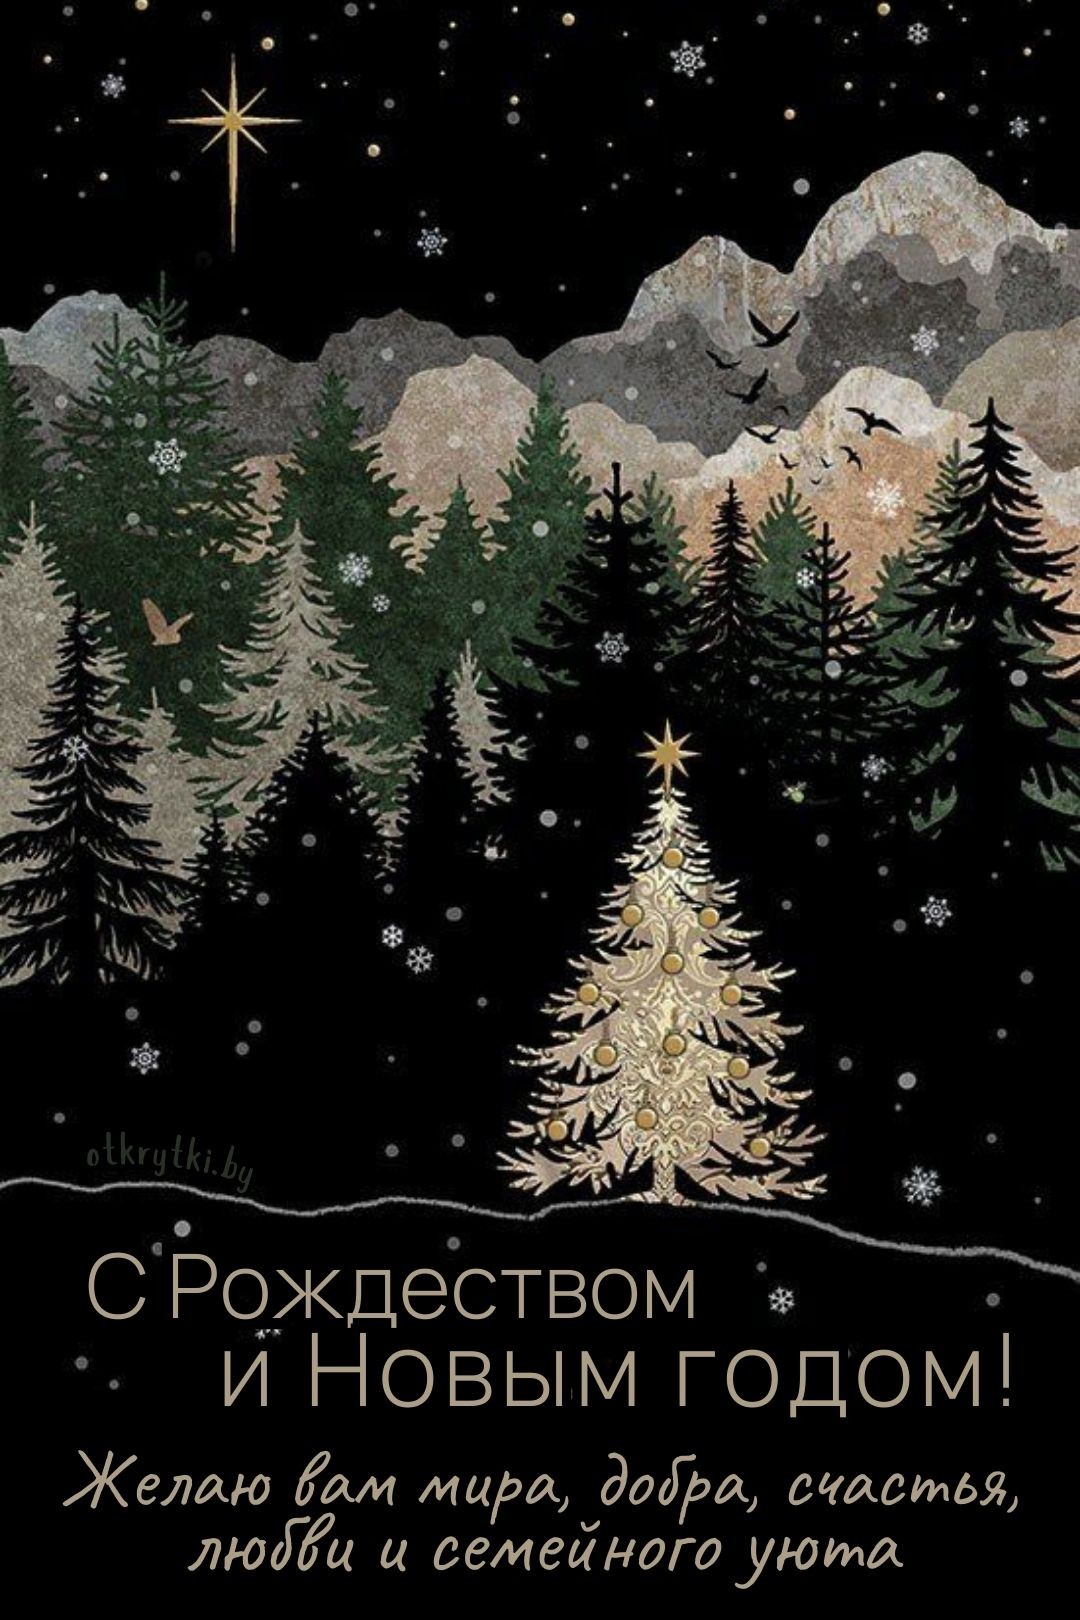 Картинка с Рождеством и Новым годом